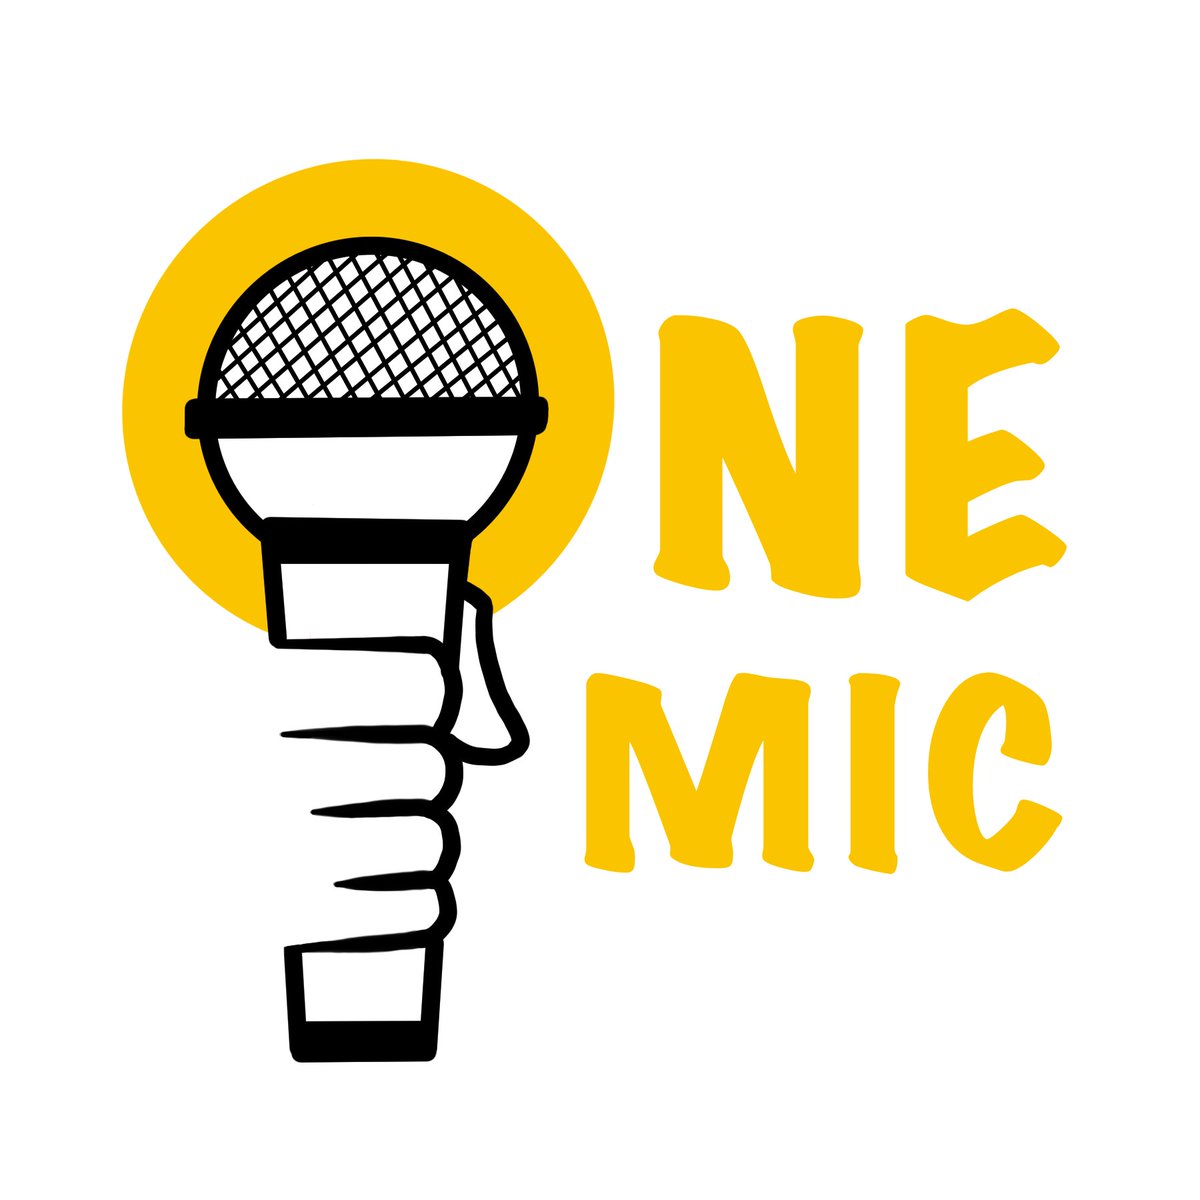 Onemic.fr

Un logo magnifique par la très talentueuse @AlisonOfAnarchy